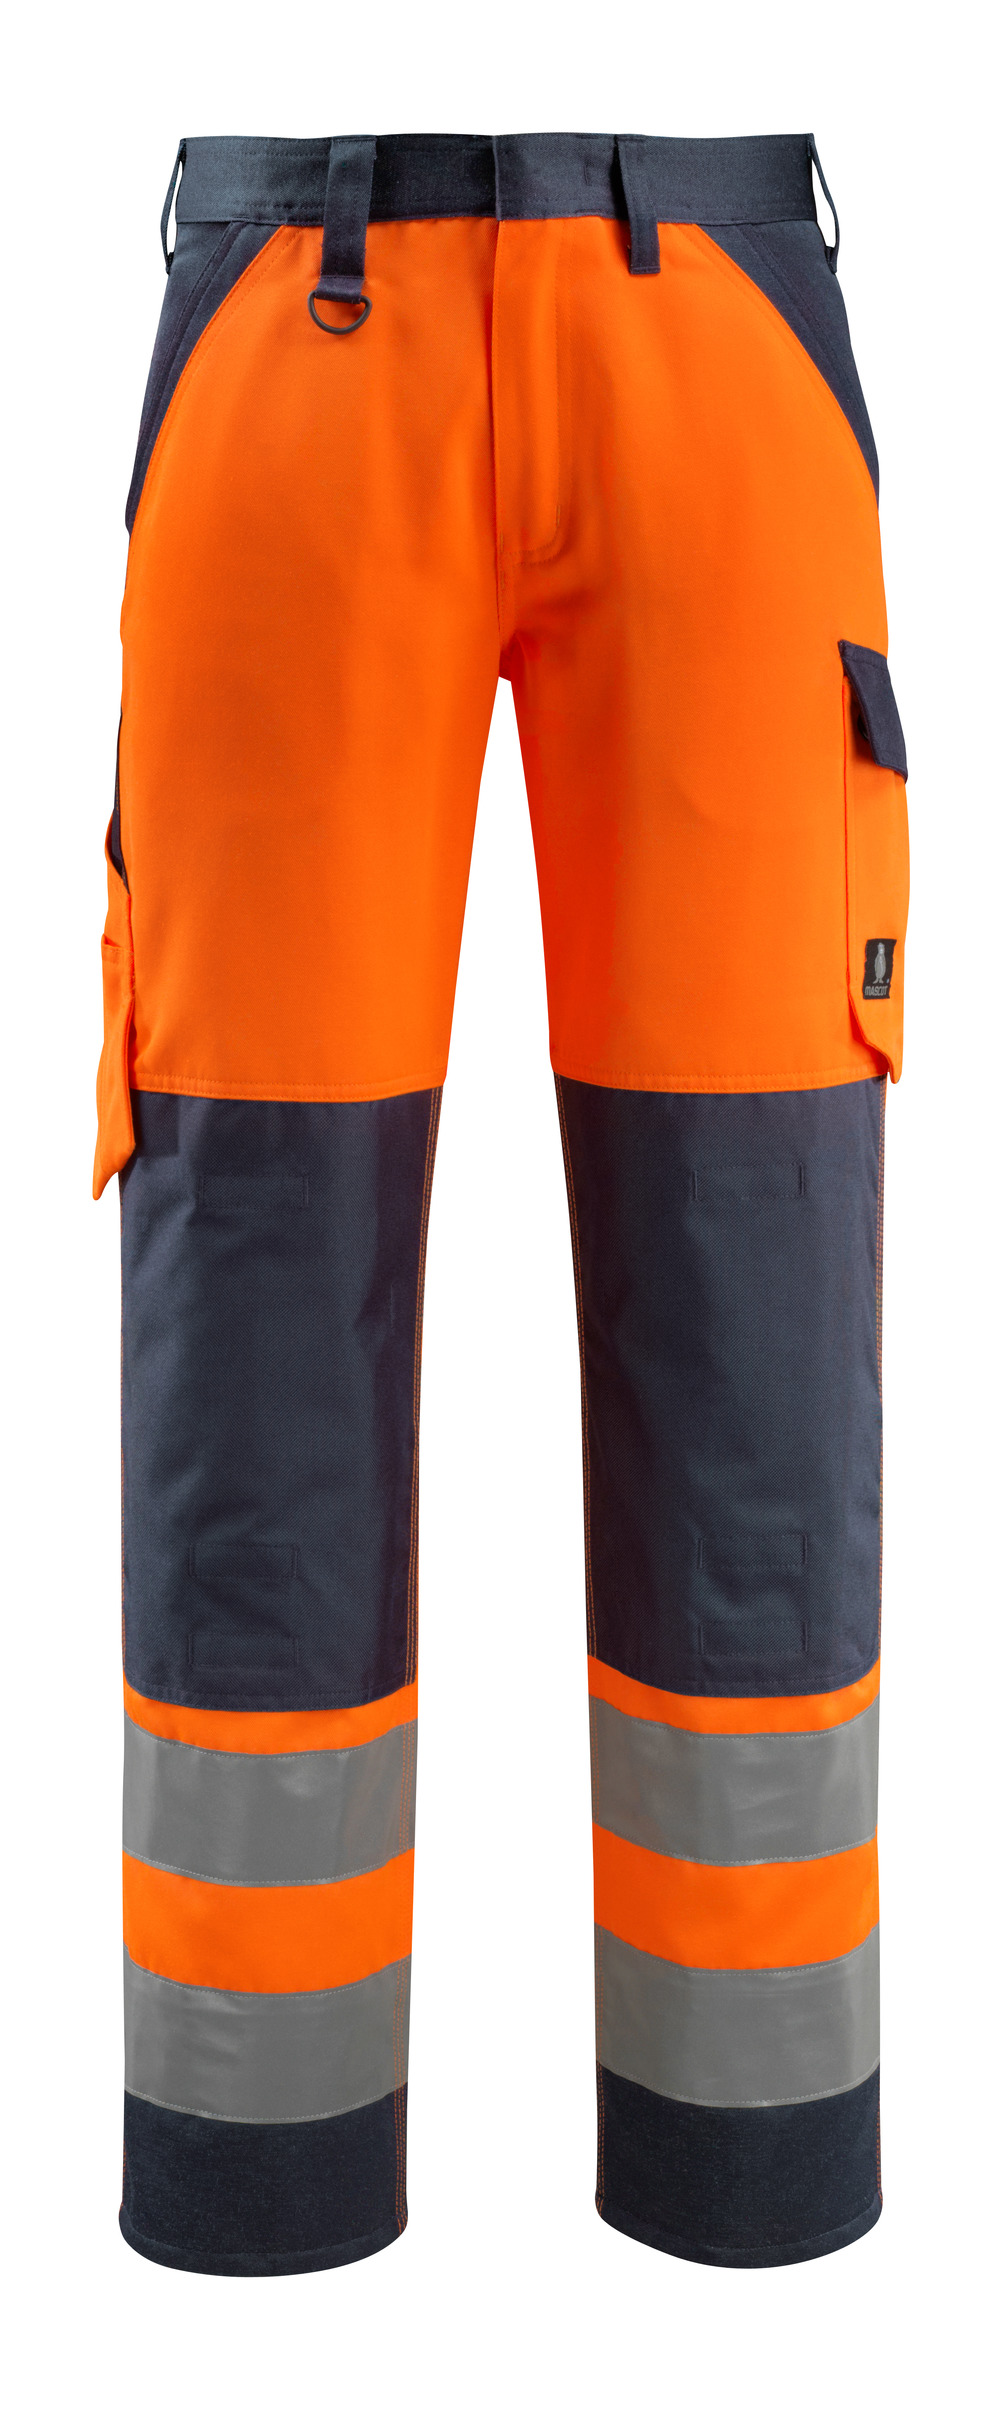 MASCOT-Warnschutz, Warn-Bund-Hose, Maitland,  90 cm, 285 g/m², orange/schwarzblau

